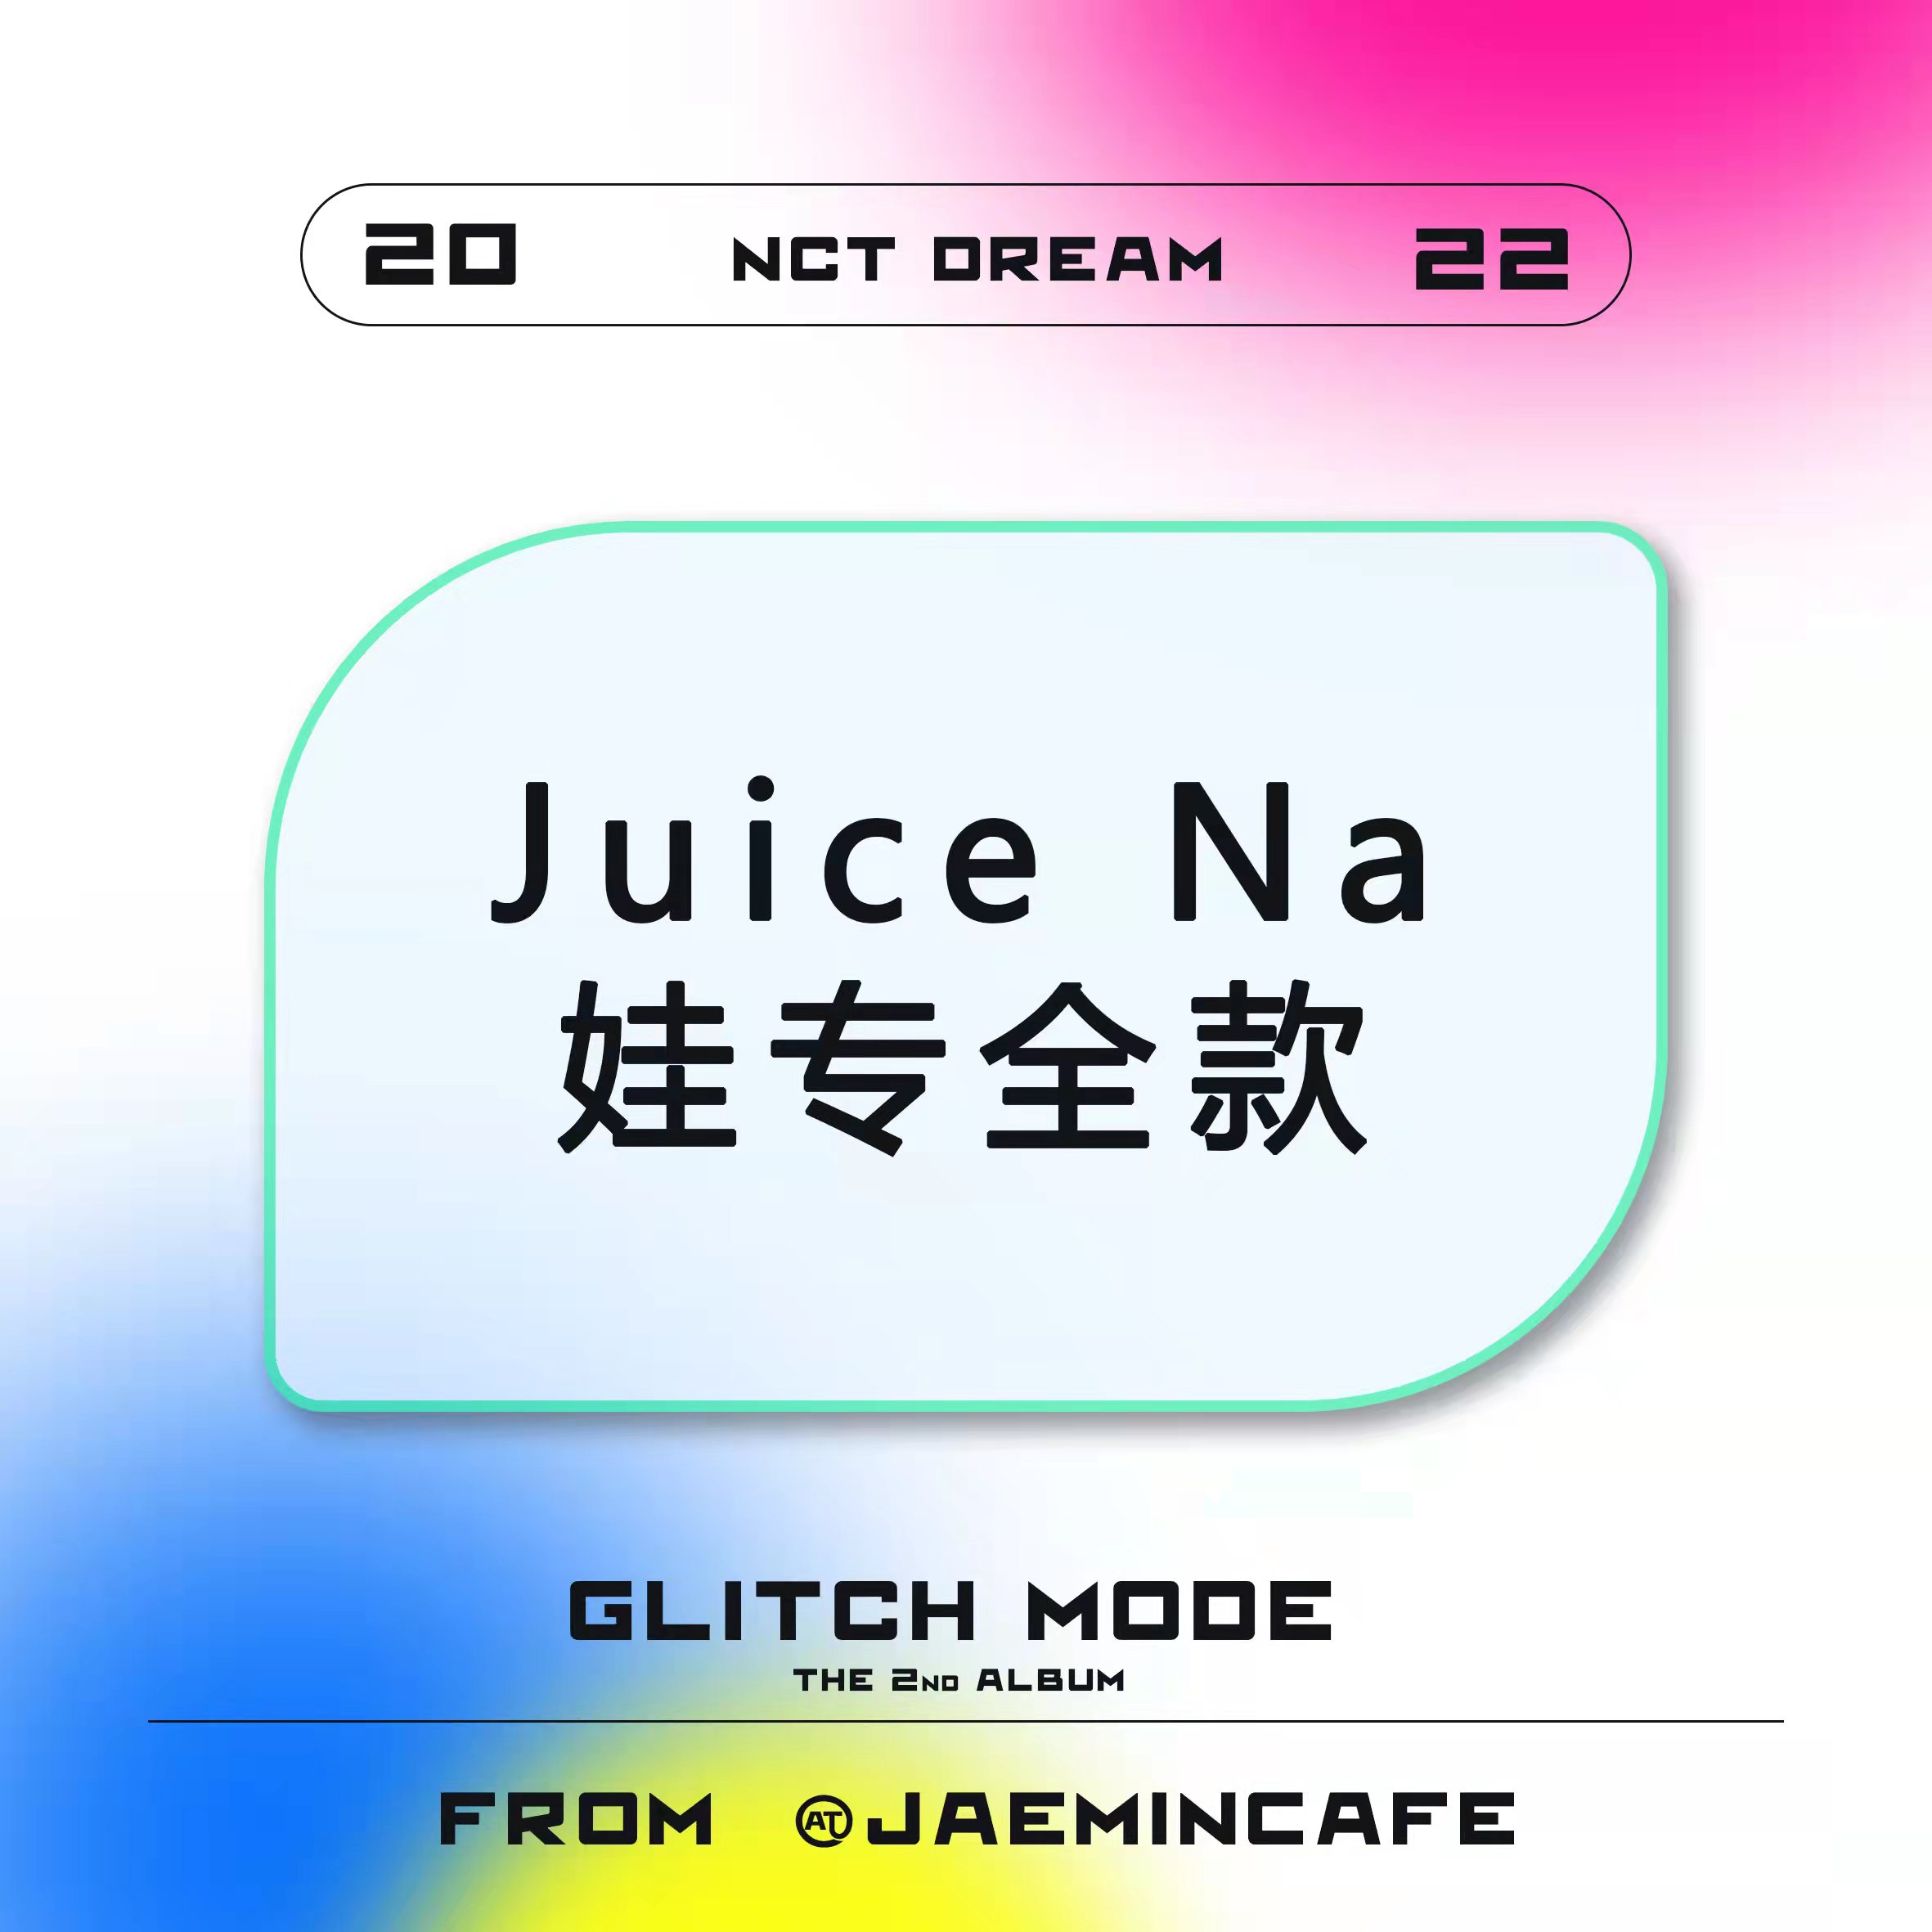 [全款 JuiceNa娃 特典专] NCT DREAM - 正规2辑 [Glitch Mode] (写真集版本) (随机版本) *购买多张尽量发不同版本_罗渽民吧_JAEMINbar